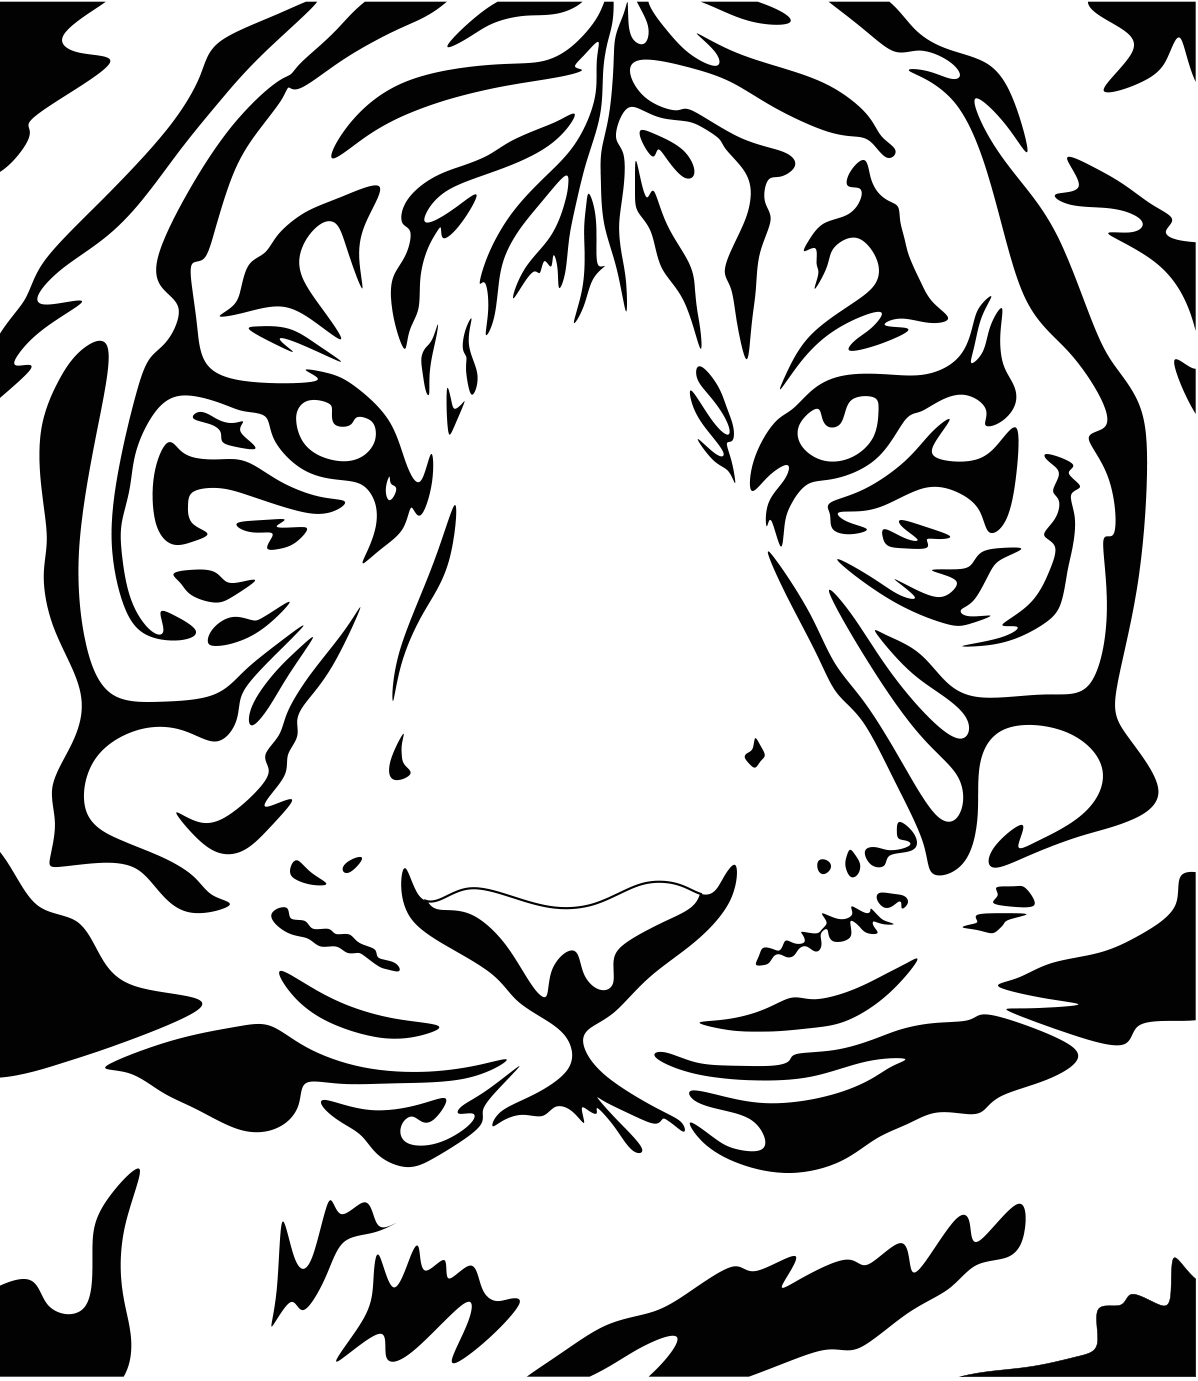 tiger2